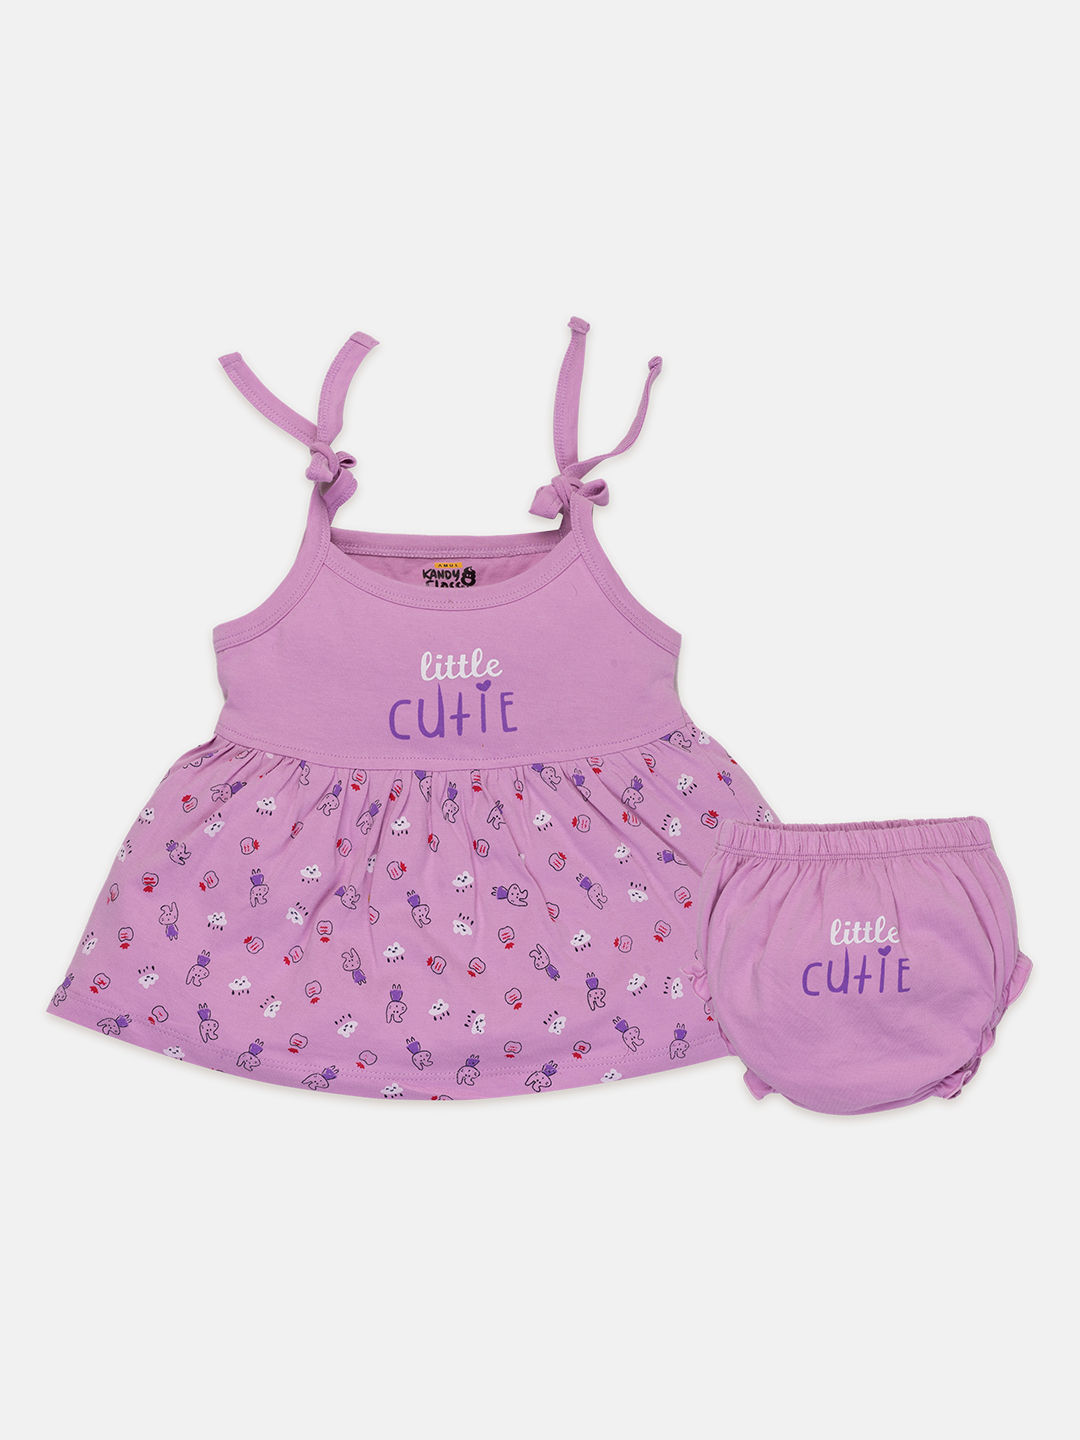 Hudson Baby Infant Girl Cotton Dresses, Fruit Salad, 3-6 Months -  Walmart.com